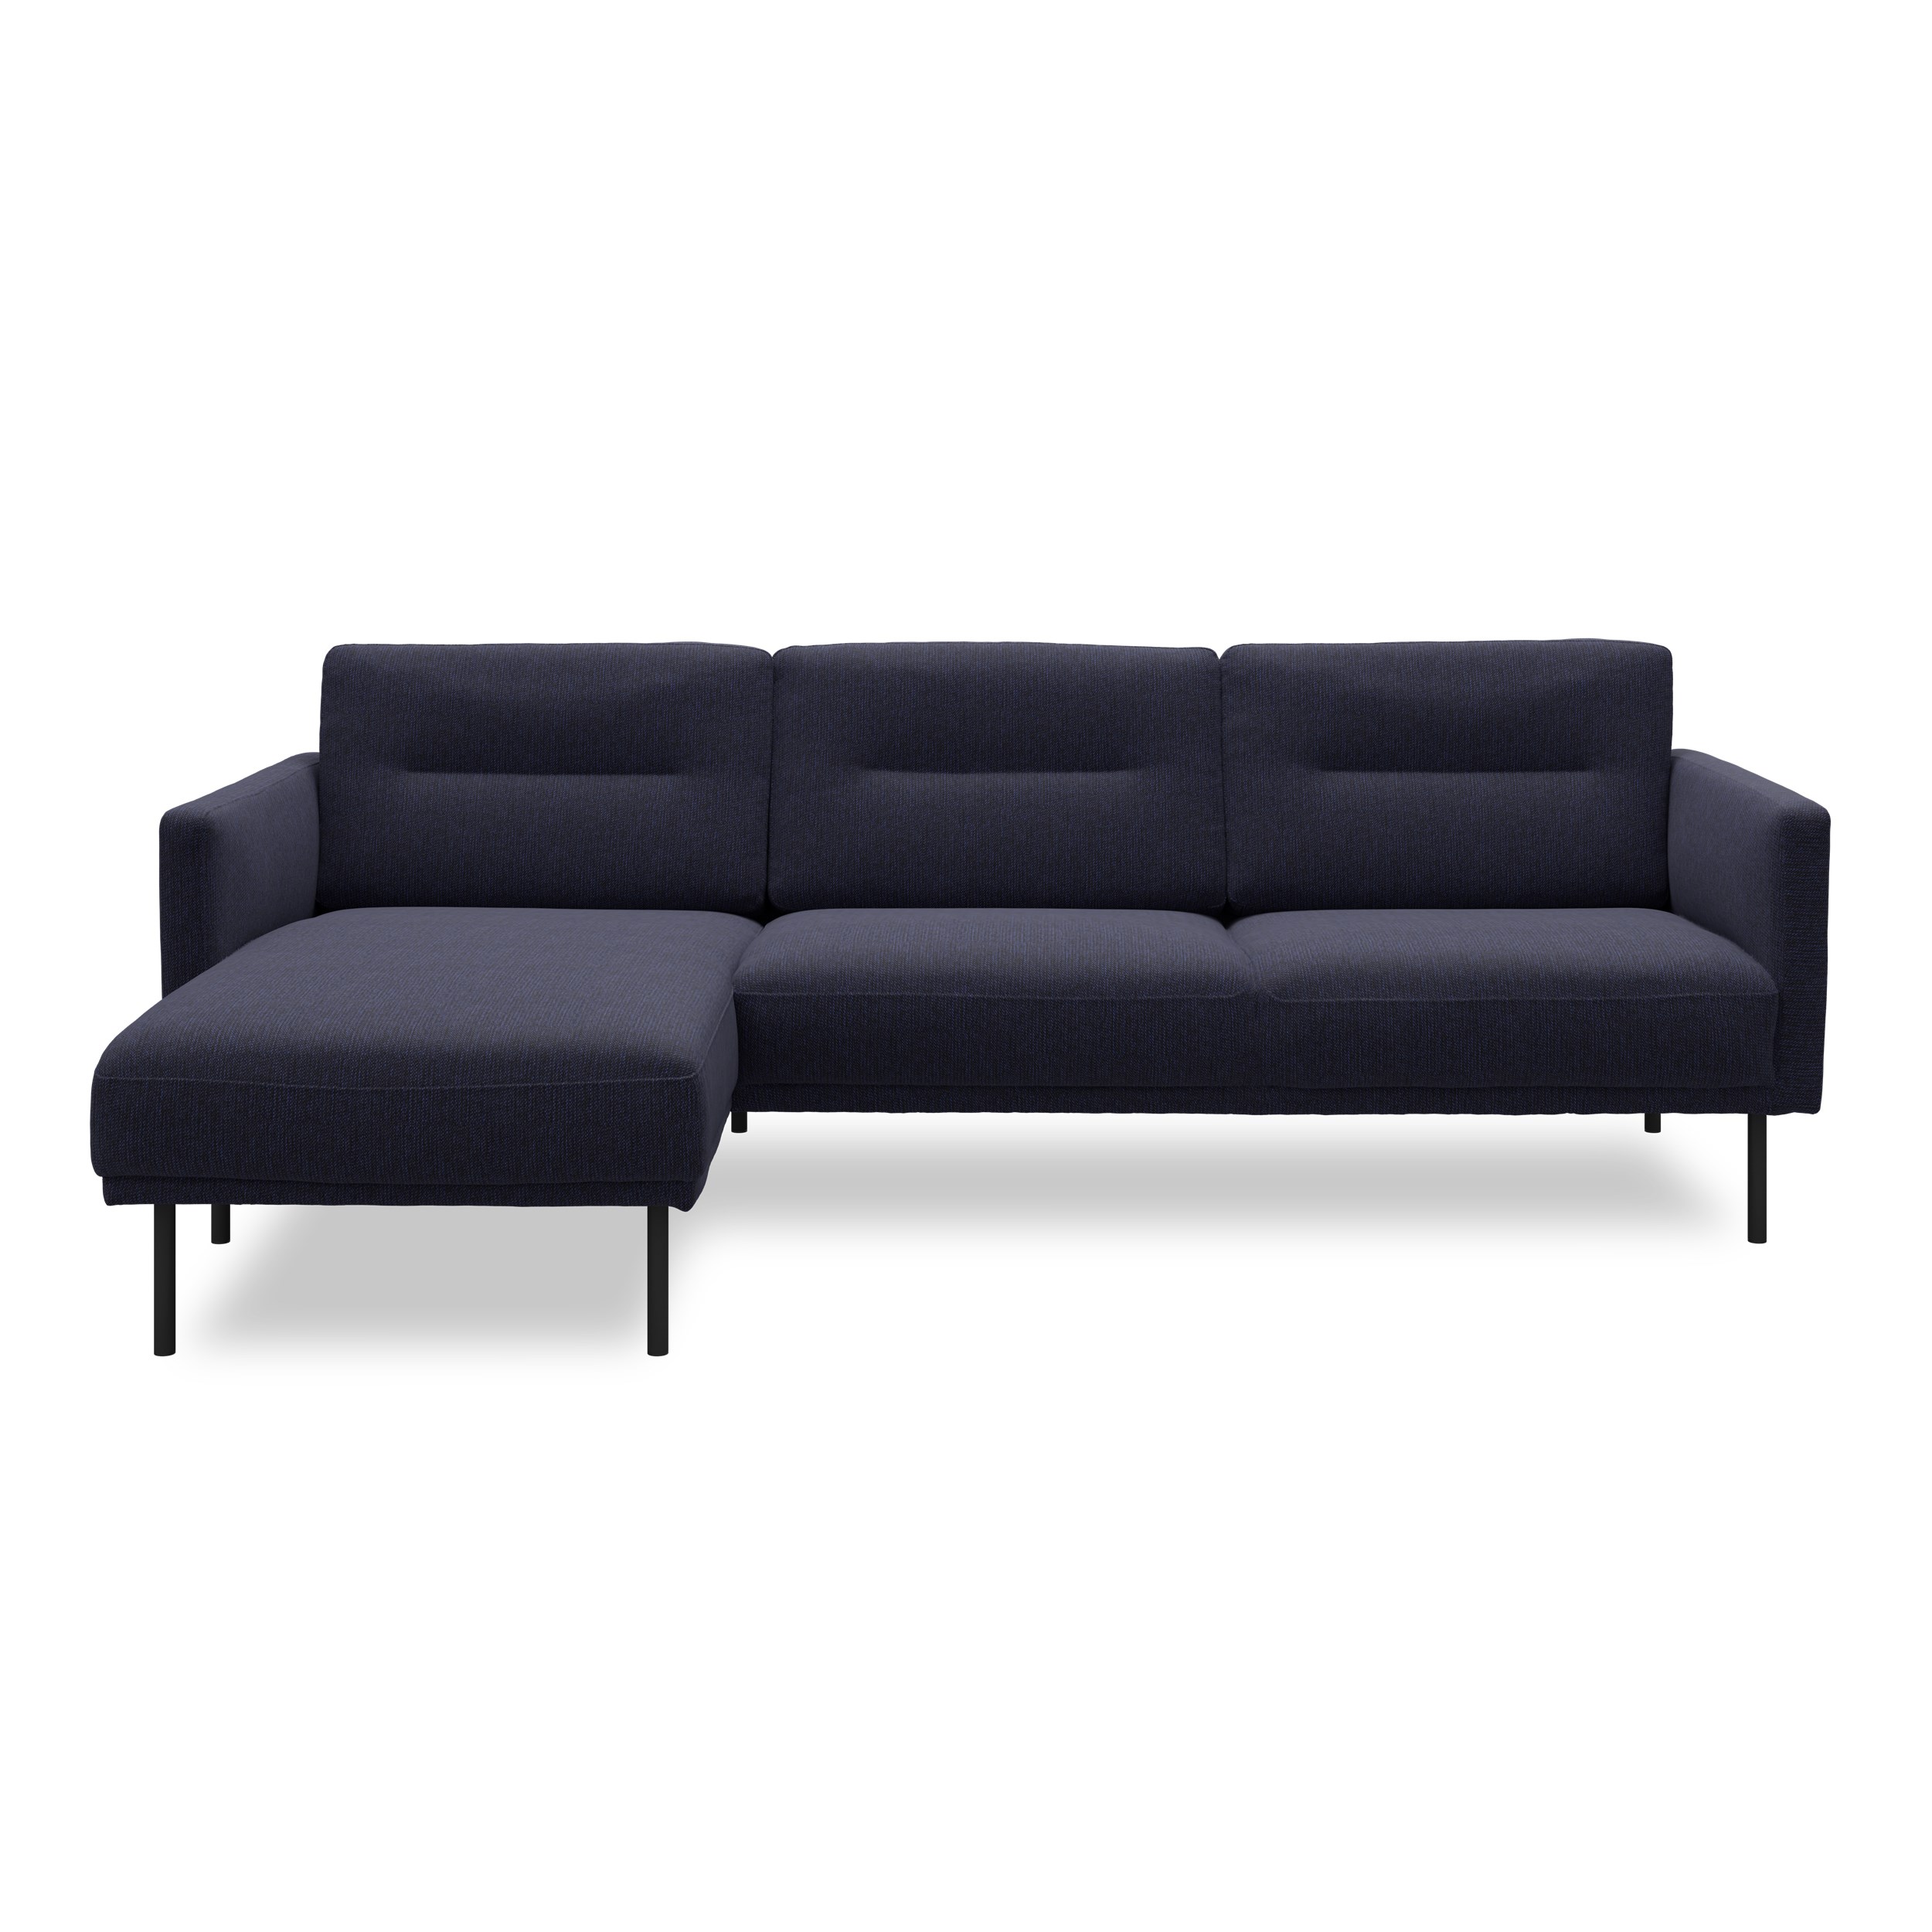 Larvik venstrevendt sofa med chaiselong - Hampton 373 Blue stof og ben i sortlakeret metal